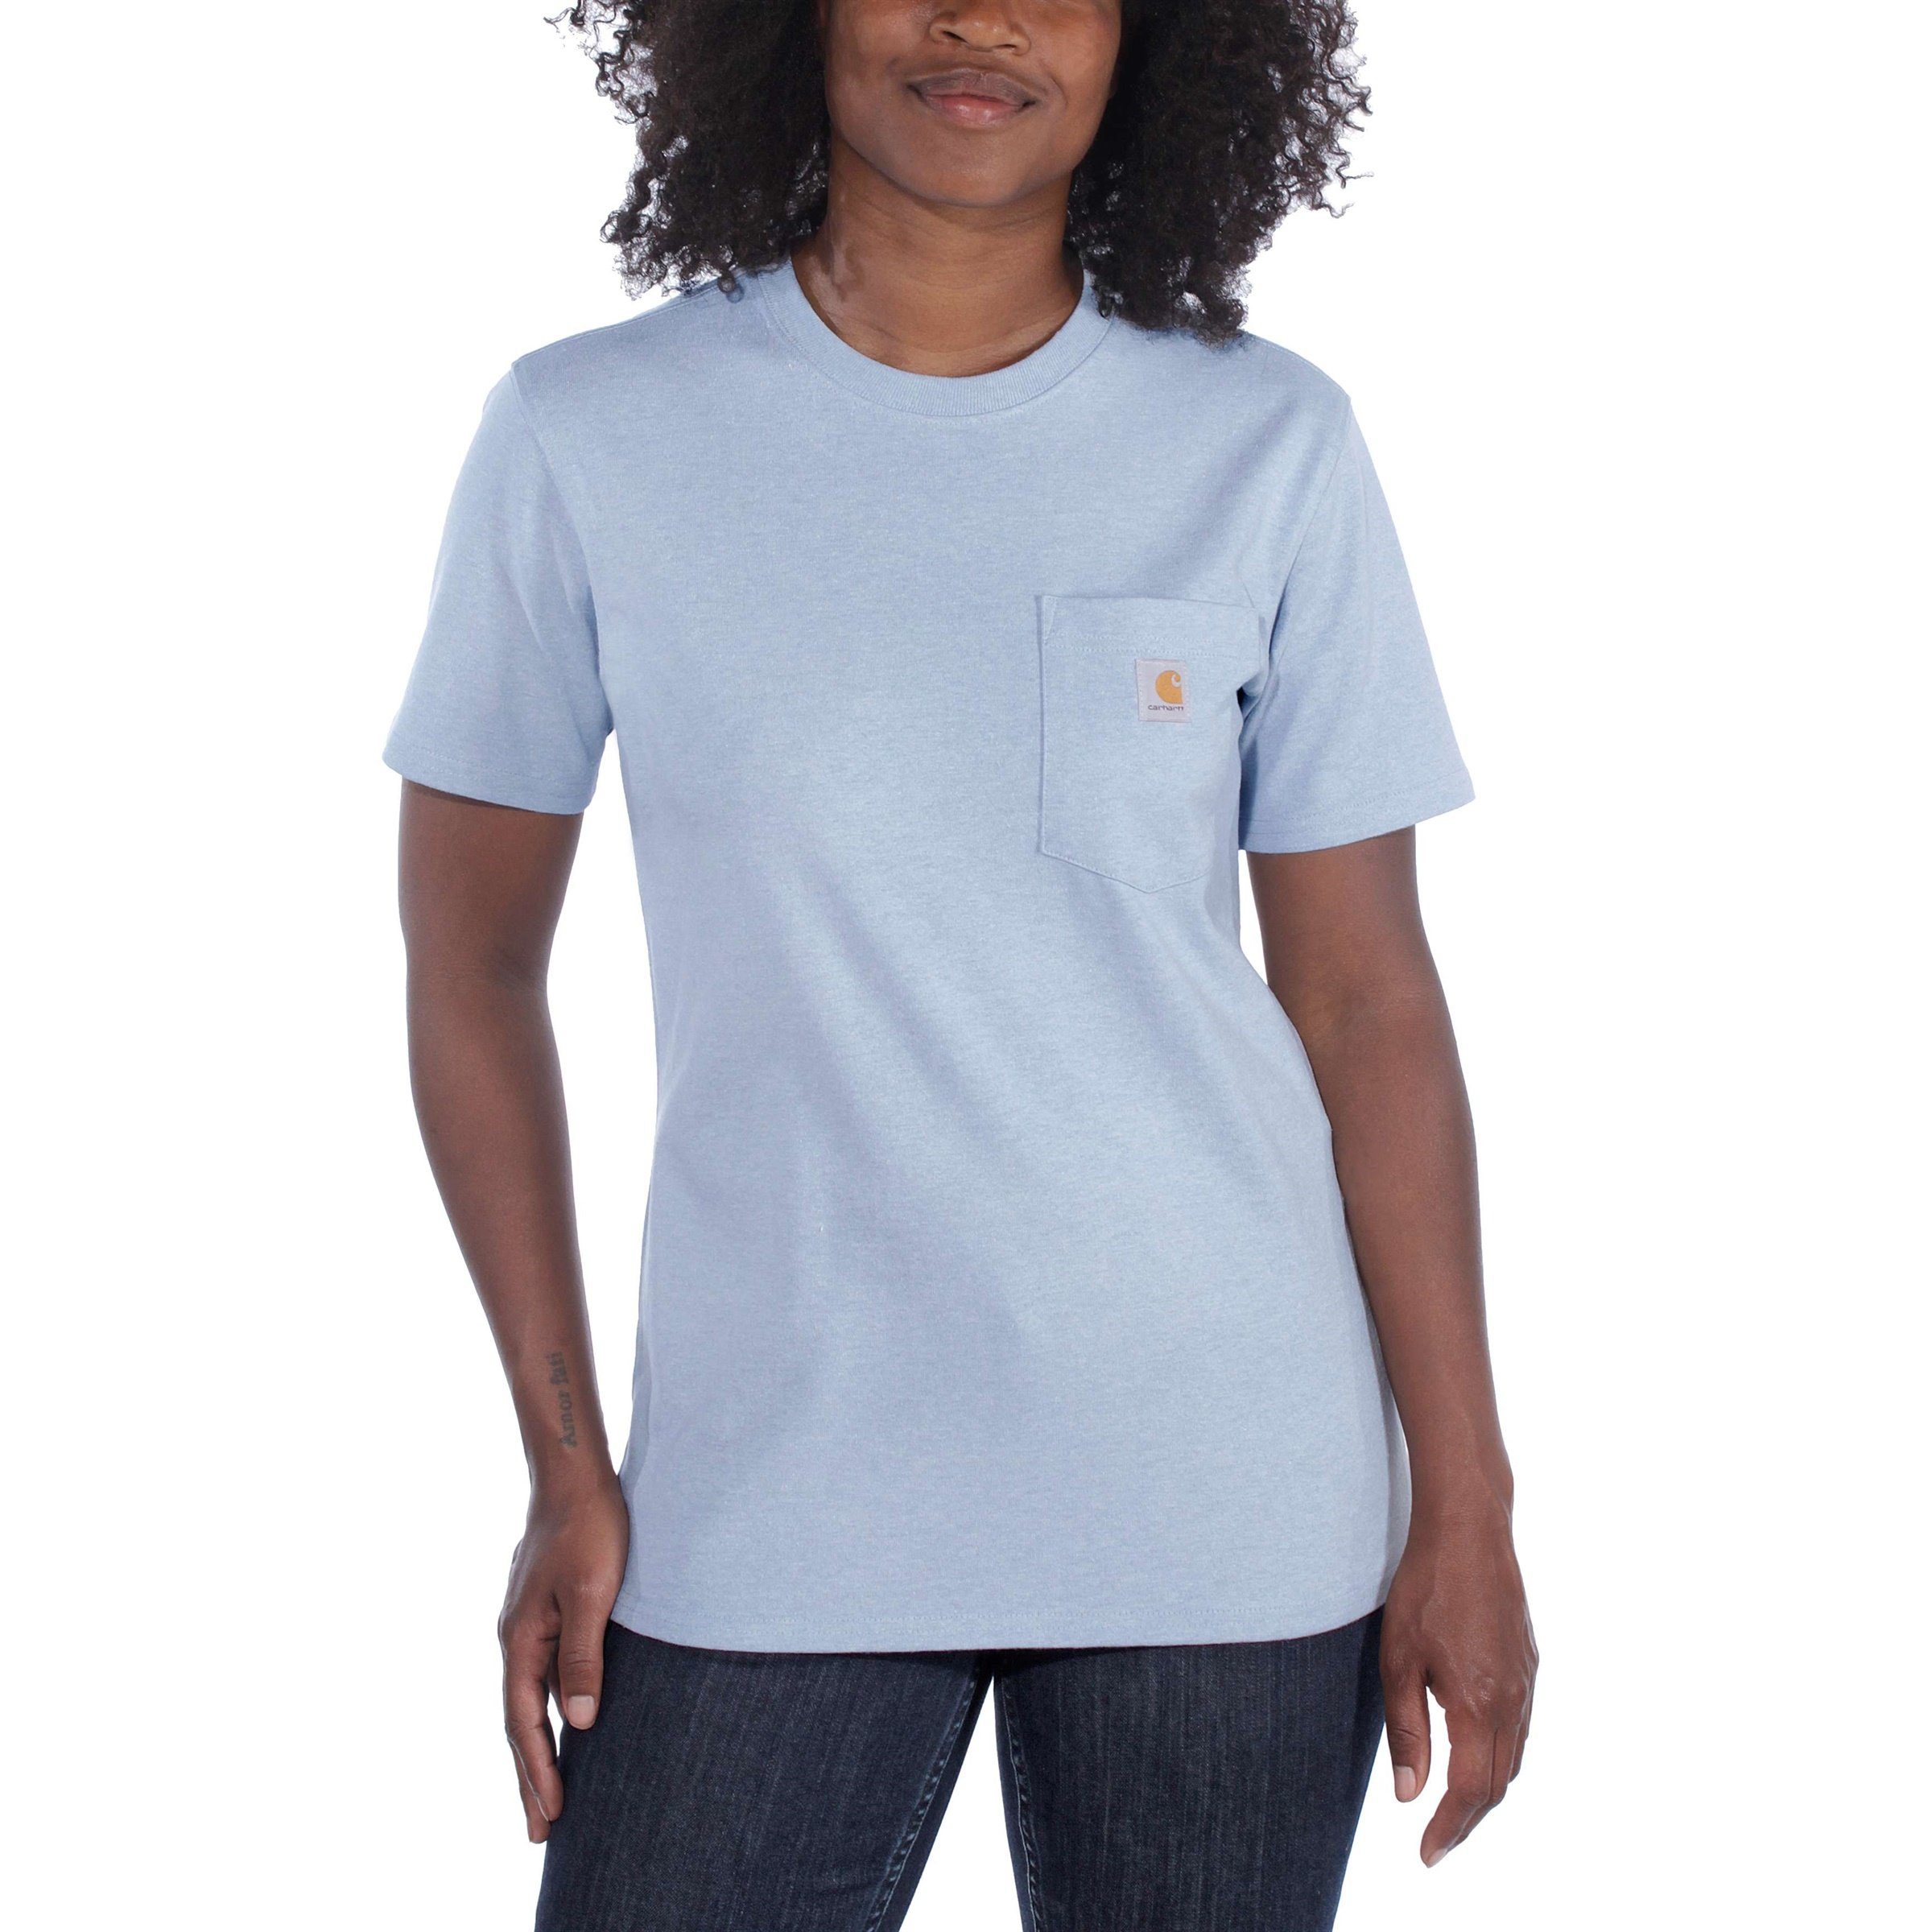 T-Shirt Heavyweight Adult Fit Pocket Carhartt Loose Damen Short-Sleeve Carhartt T-Shirt white